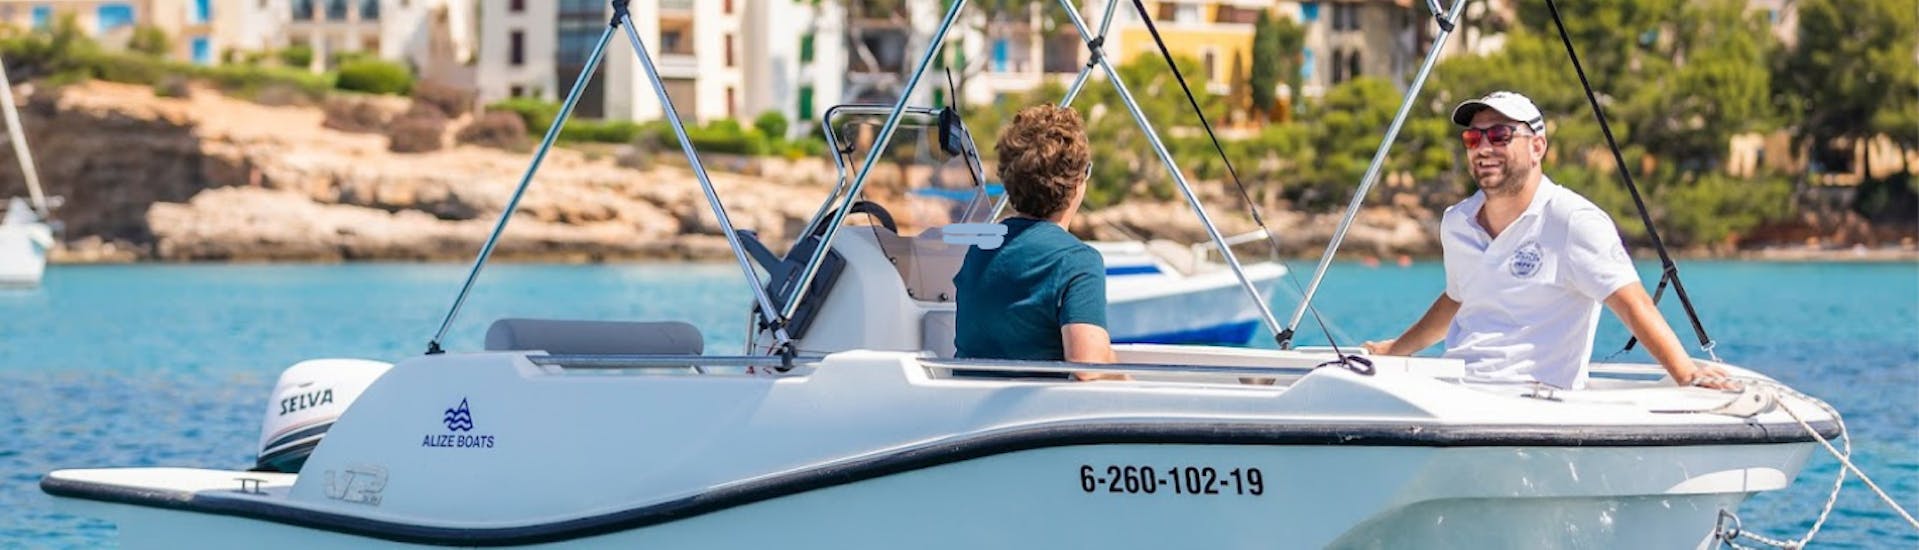 Ein paar Leute genießen ein Boot bis zu 6 Personen von Alize Boats Can Pastilla ohne Bootsführerschein in der Bucht von Palma.